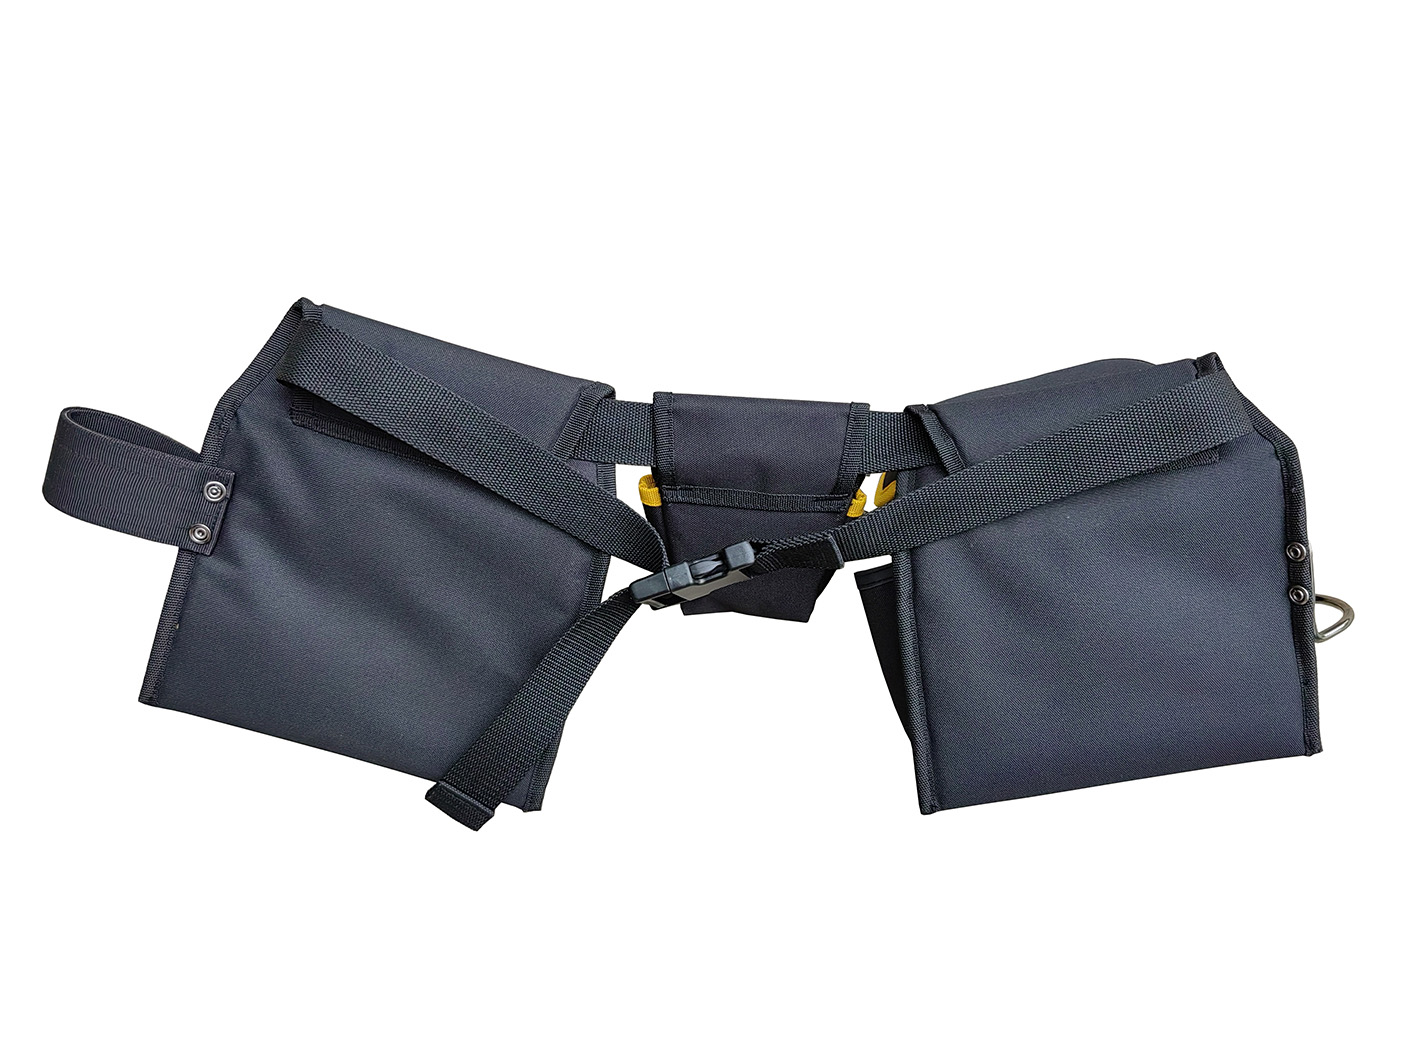 Durable adjustable waist tool bag belt mullet buster 3 bag tool belt